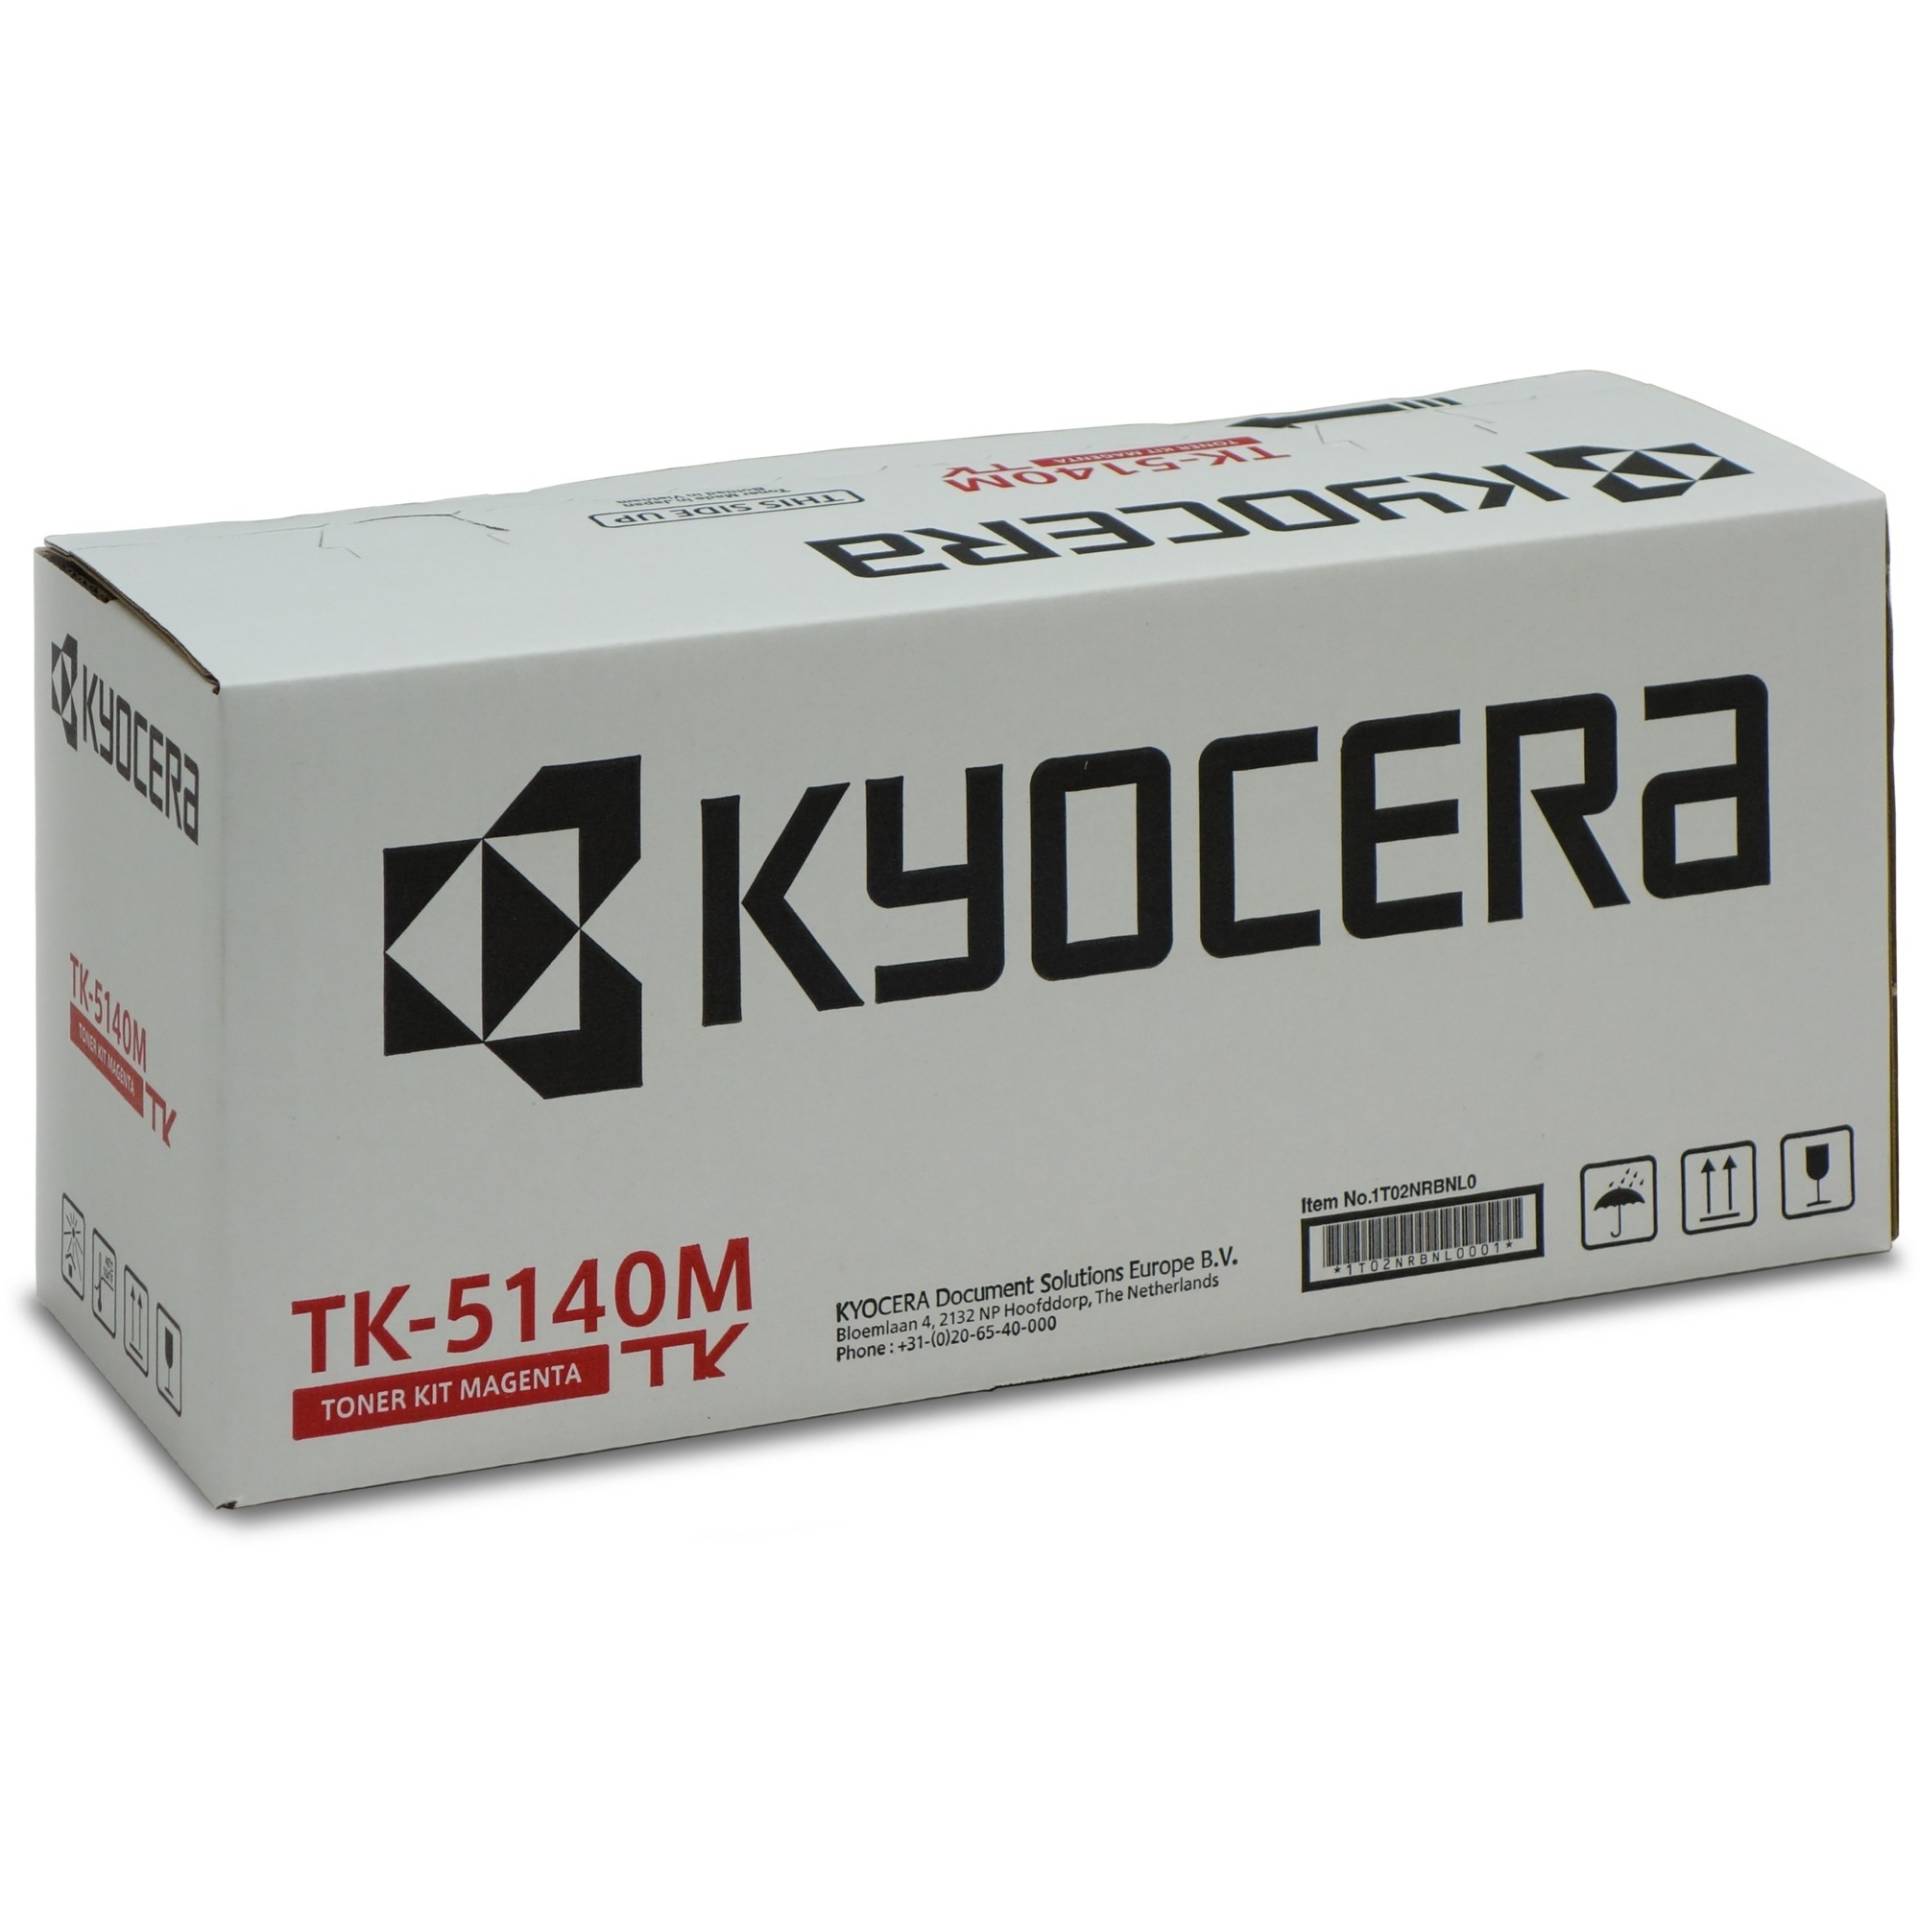 Toner magenta TK-5140M von Kyocera